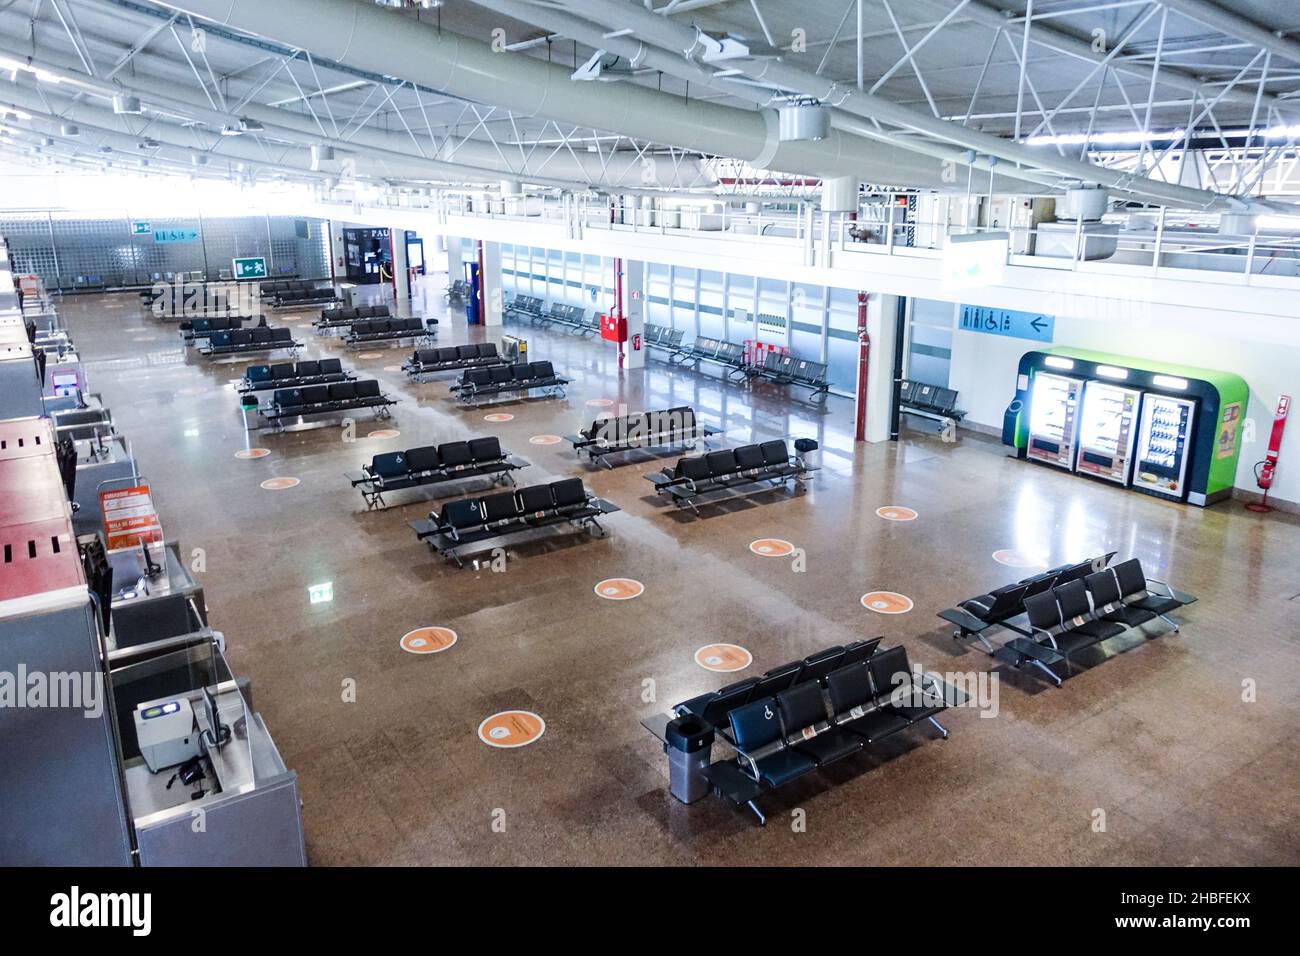 Leere Sitze am Flughafen Faro, Portugal, da die Covid-19-Pandemie Reisebeschränkungen auslöst Stockfoto